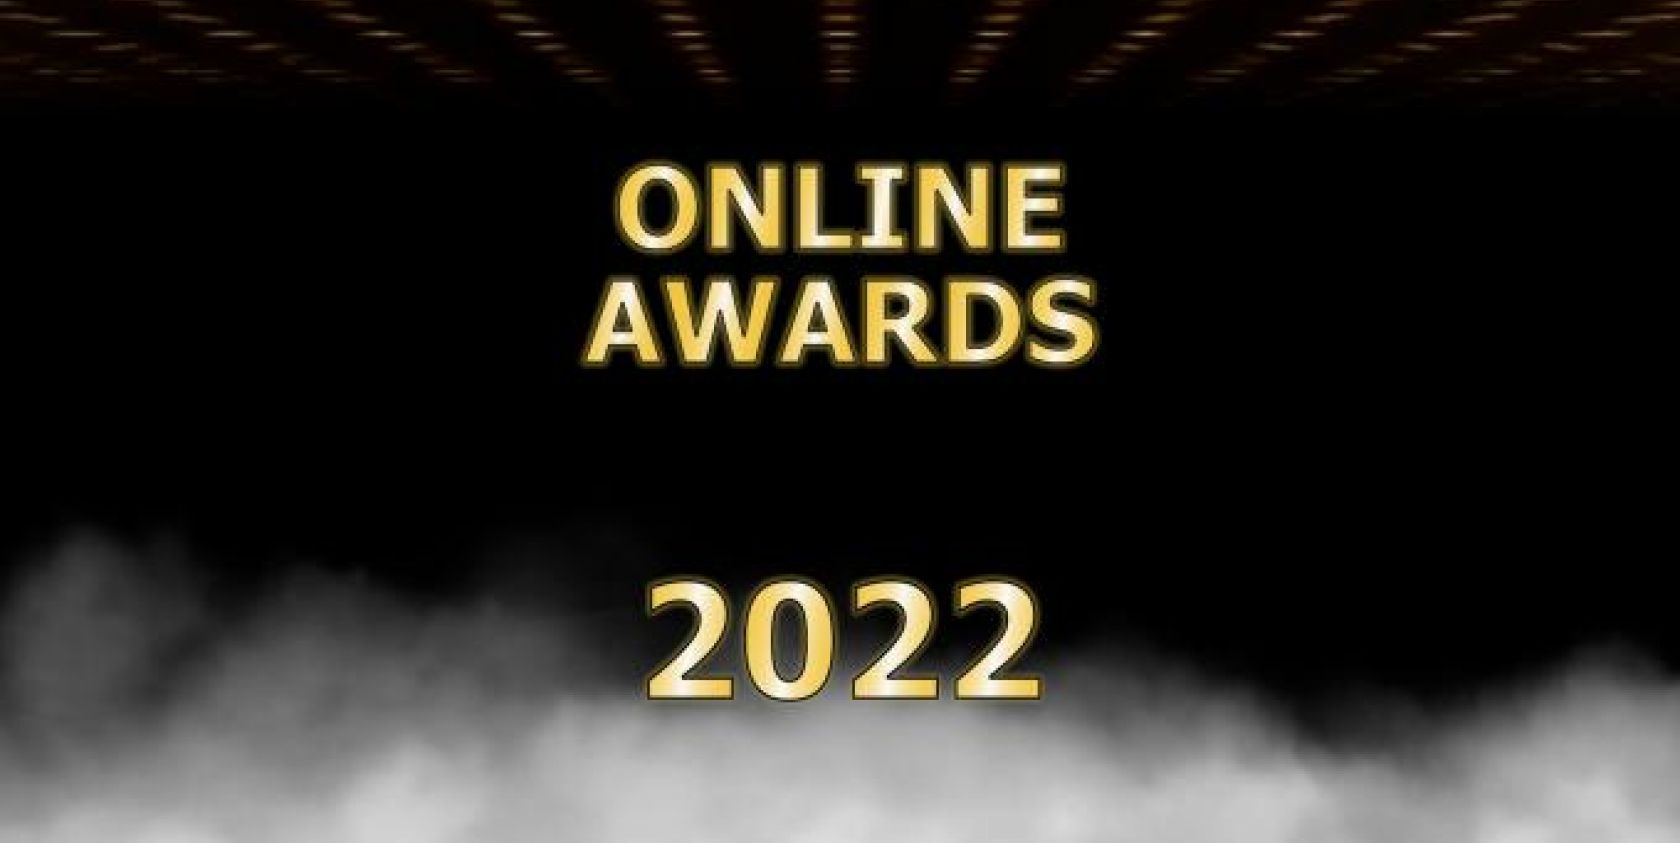 Online-Awards 2022 - Mitmachen und gewinnen!